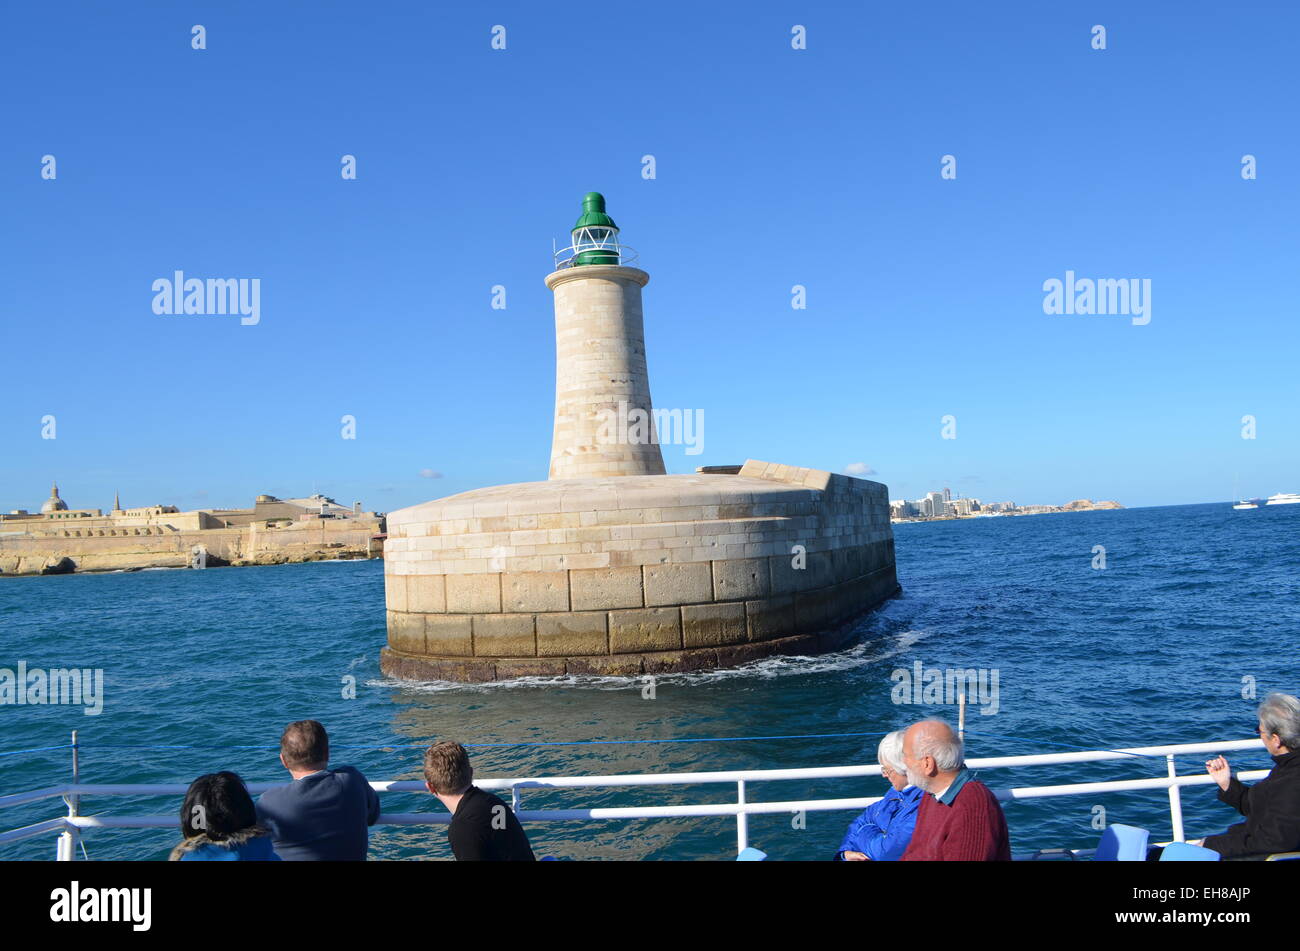 Malta, Valletta. Vom Meer in den Grand Harbour hinter dem Hafen gehen Wände und ein Leuchtturm ein Boatful von Touristen. Stockfoto